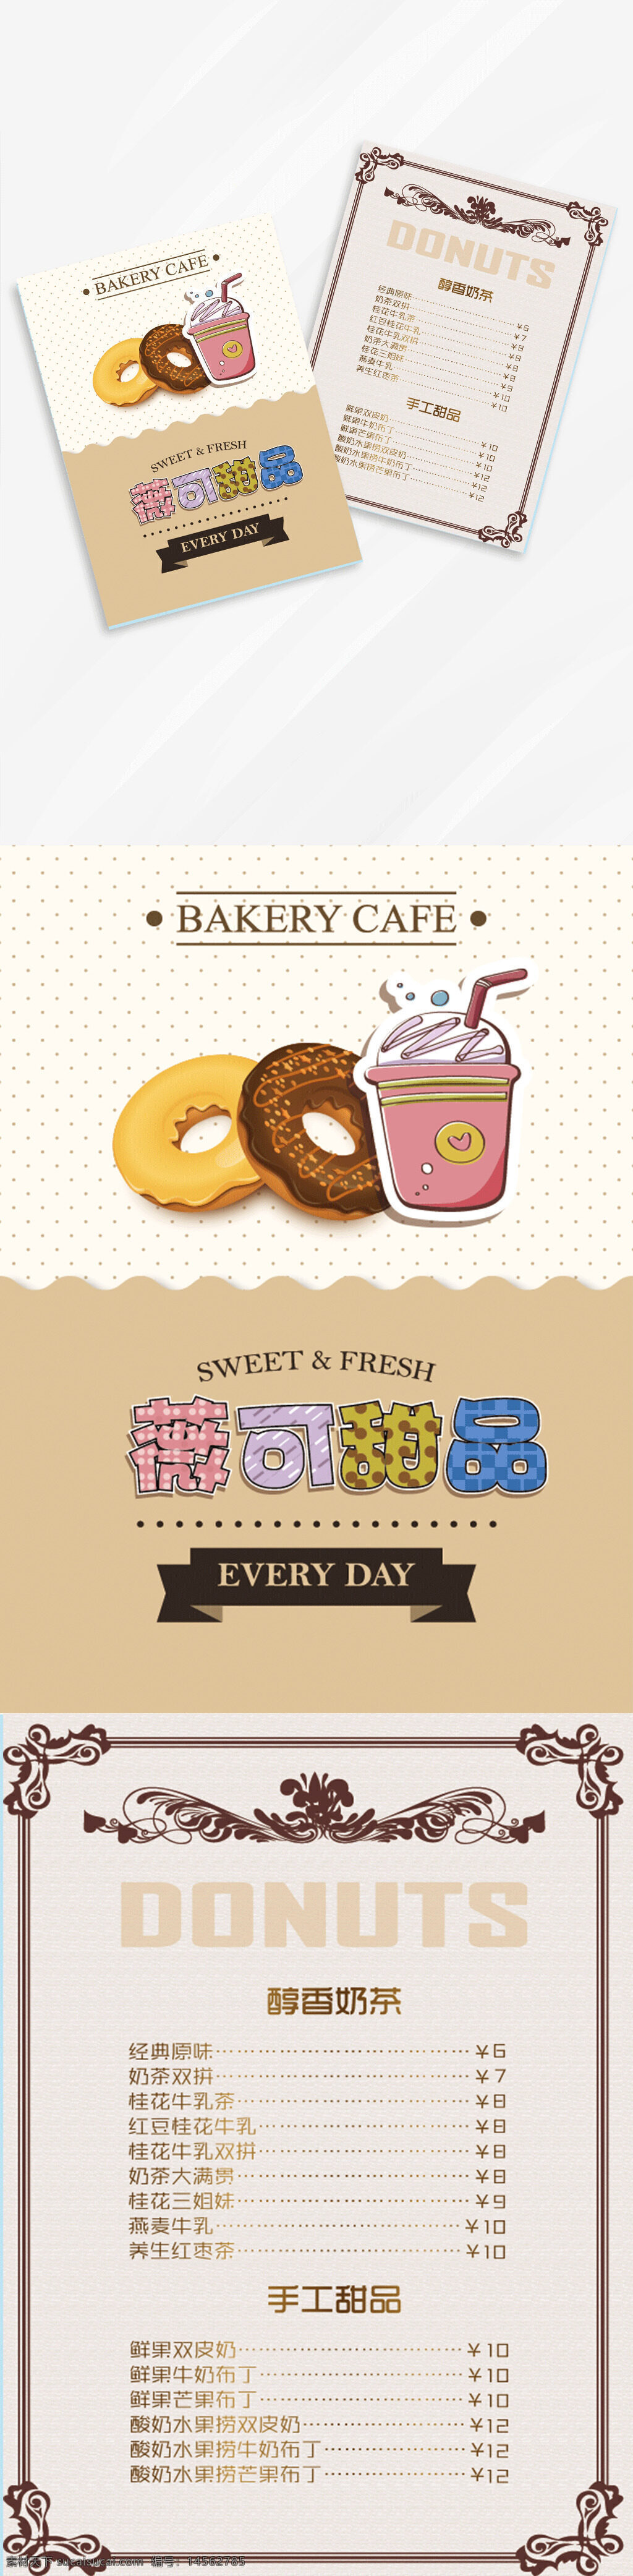 甜品 菜单 甜品菜单 奶茶菜单 甜品清单 奶茶店清单 设计 广告设计